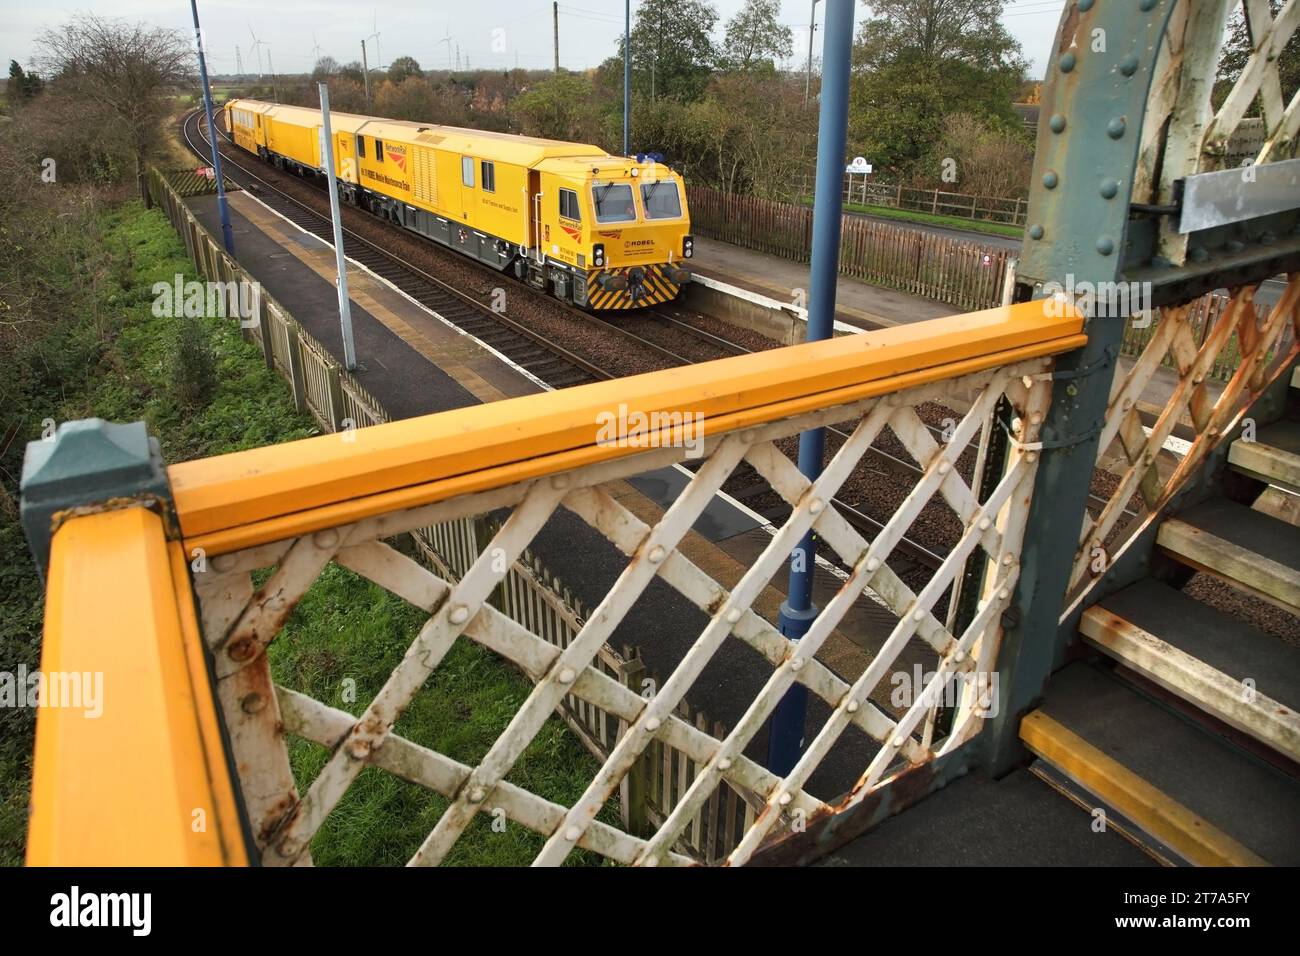 Der Robel Mobile Maintenance Train DR97507 passiert am 14.11.23. Den Bahnhof Althorpe mit dem 6U87 1013 Wakefield - Wakefield Infrastruktur Maintenance Train. Stockfoto